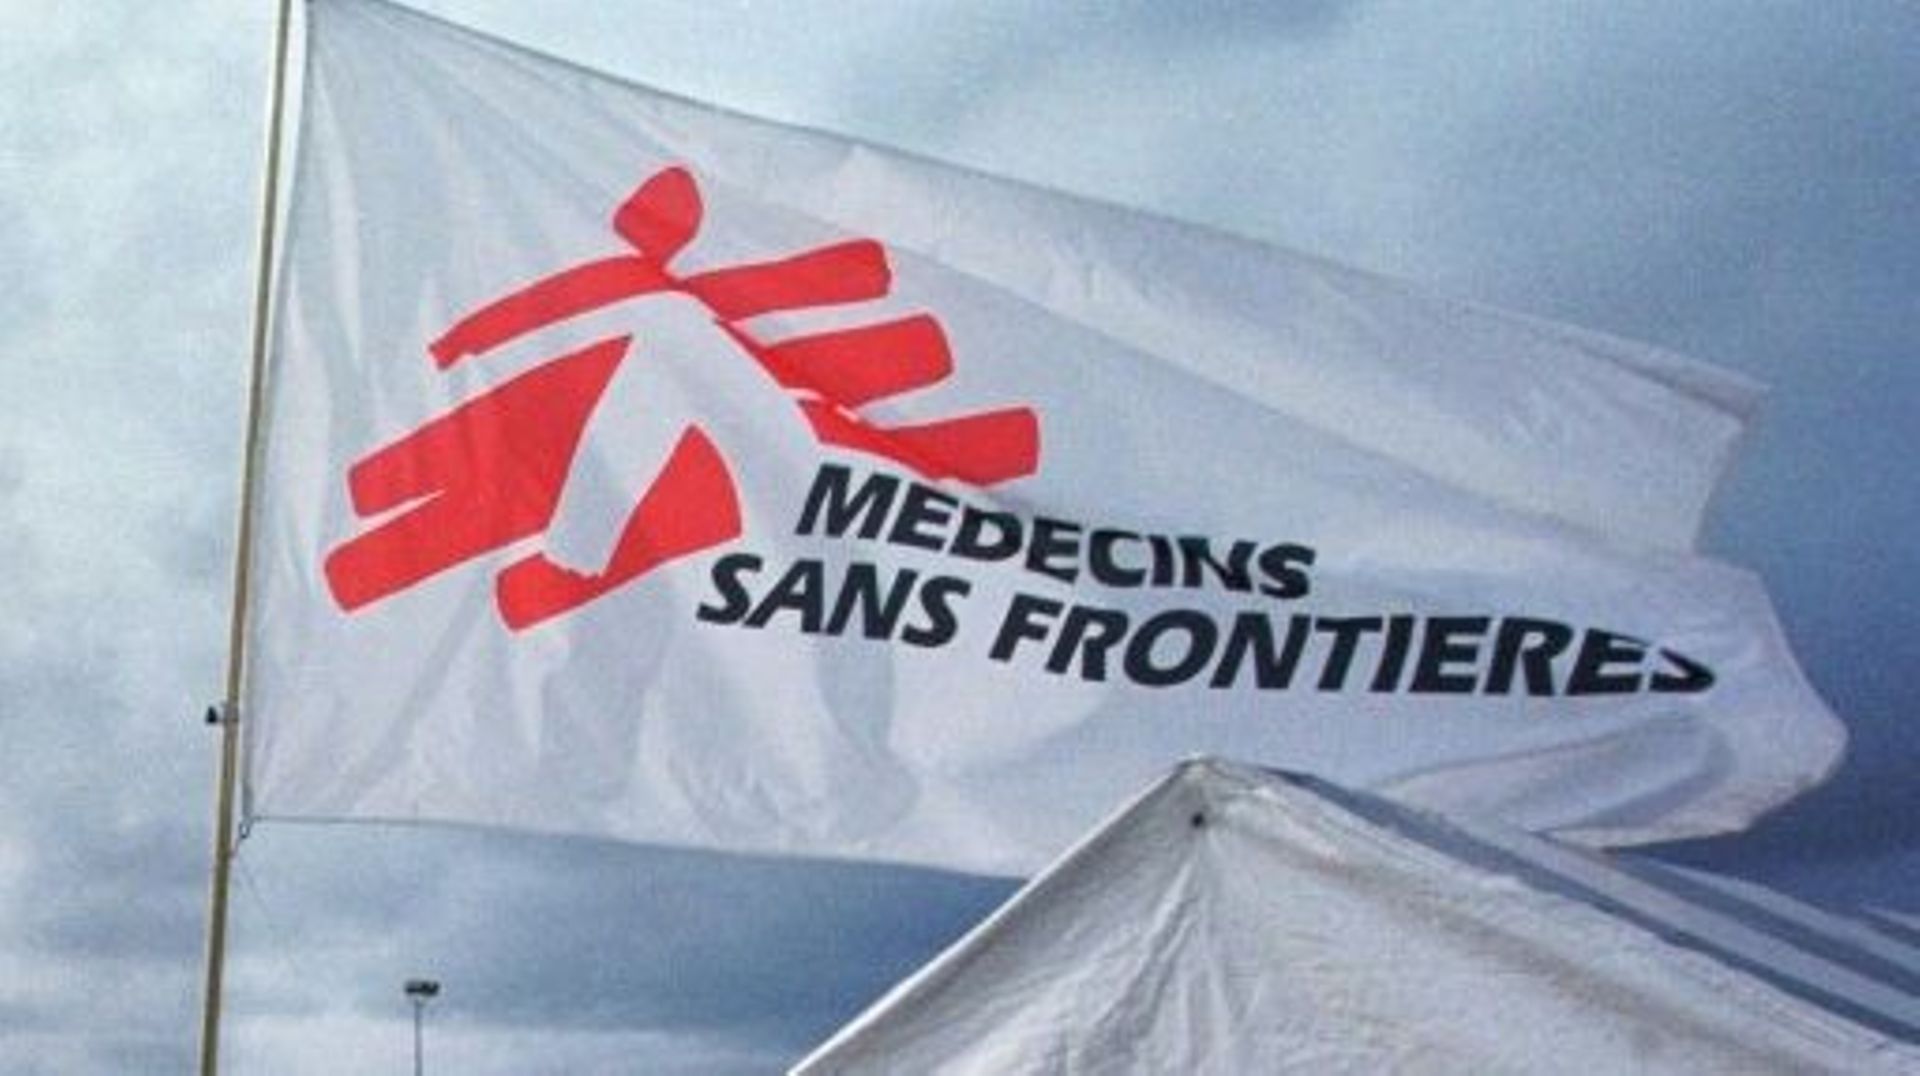 Les activités de Médecins sans Frontières (MSF) sur le territoire de la République populaire de Donetsk" ont été interdites pour "espionnage" et trafic de drogues, selon les rebelles prorusses